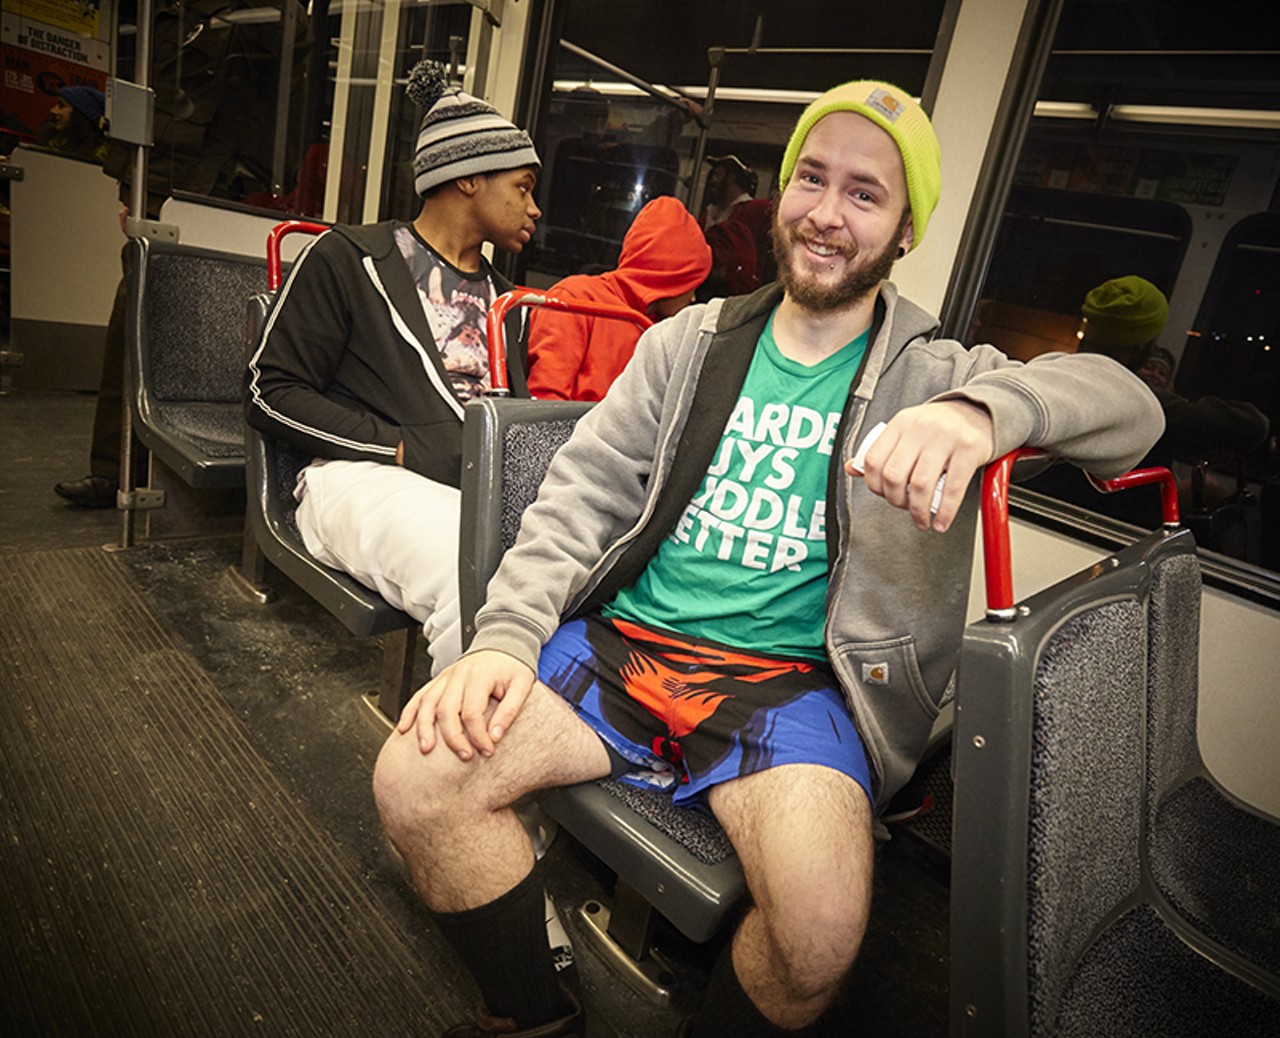 No-Pants MetroLink Ride 2015 in St. Louis